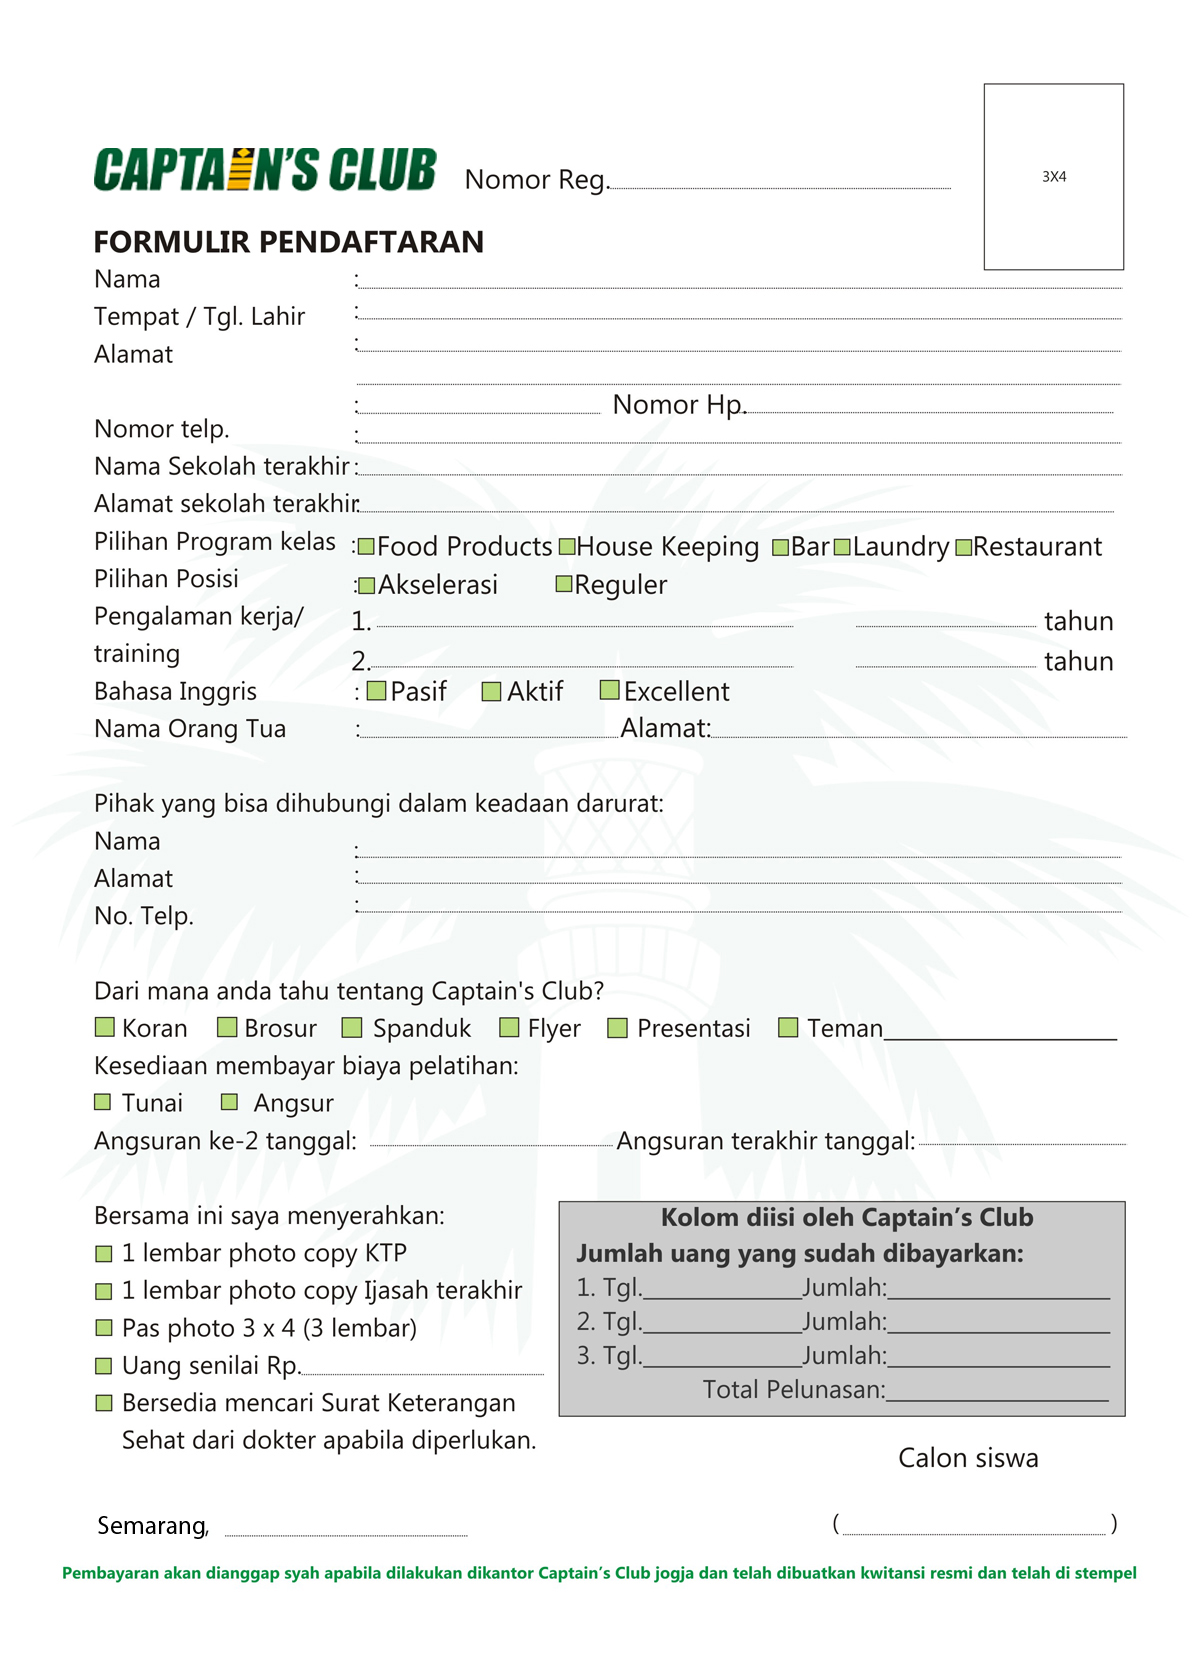 Form Pendaftaran Semarang Sekolah Kapal Pesiar Yogyakarta